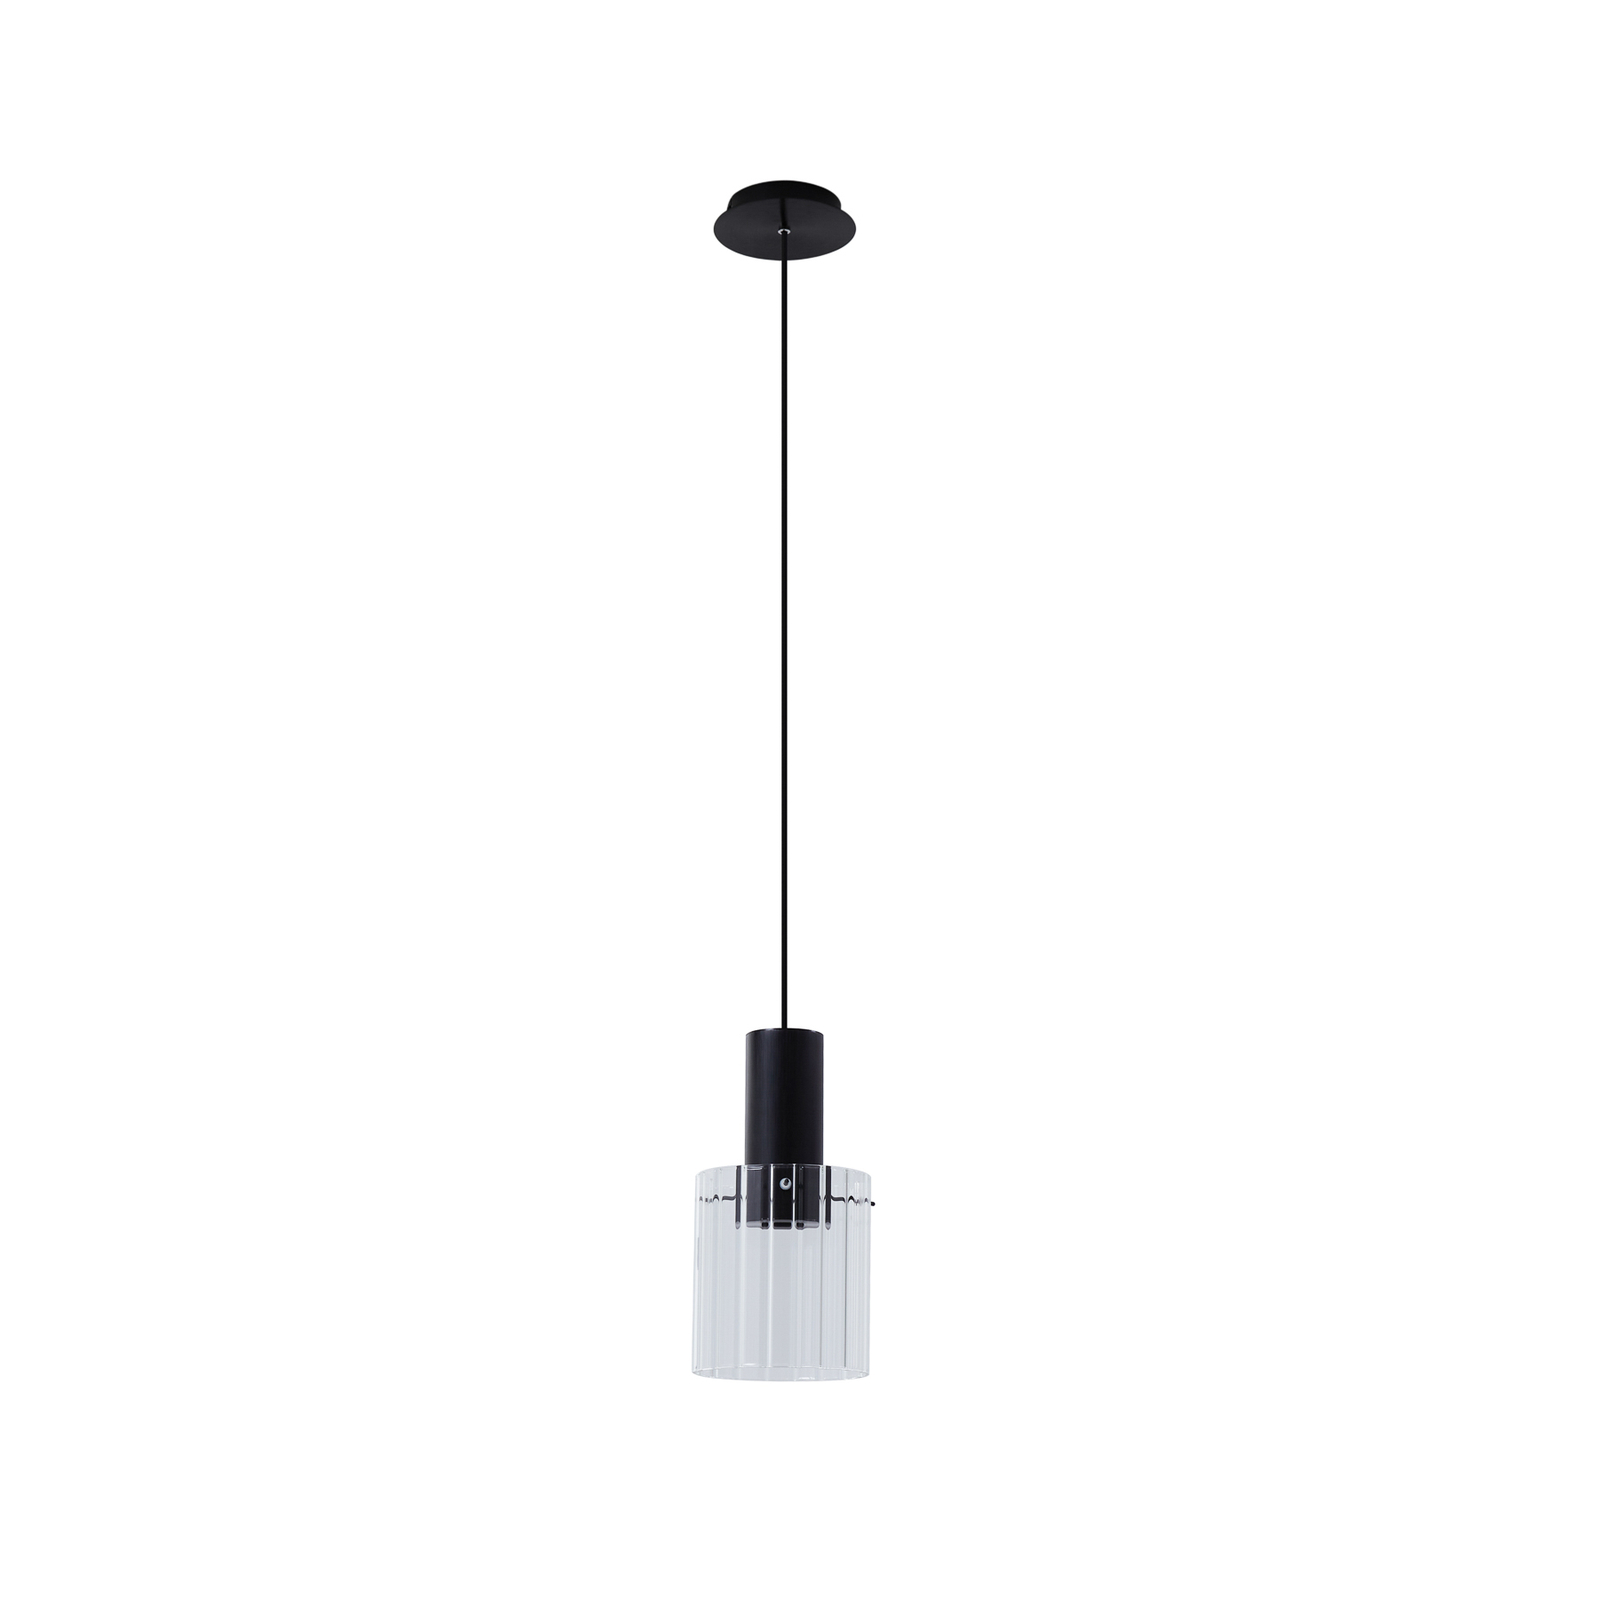 Lucande pendant light Eirian, Ø 18 cm, black, glass, E27